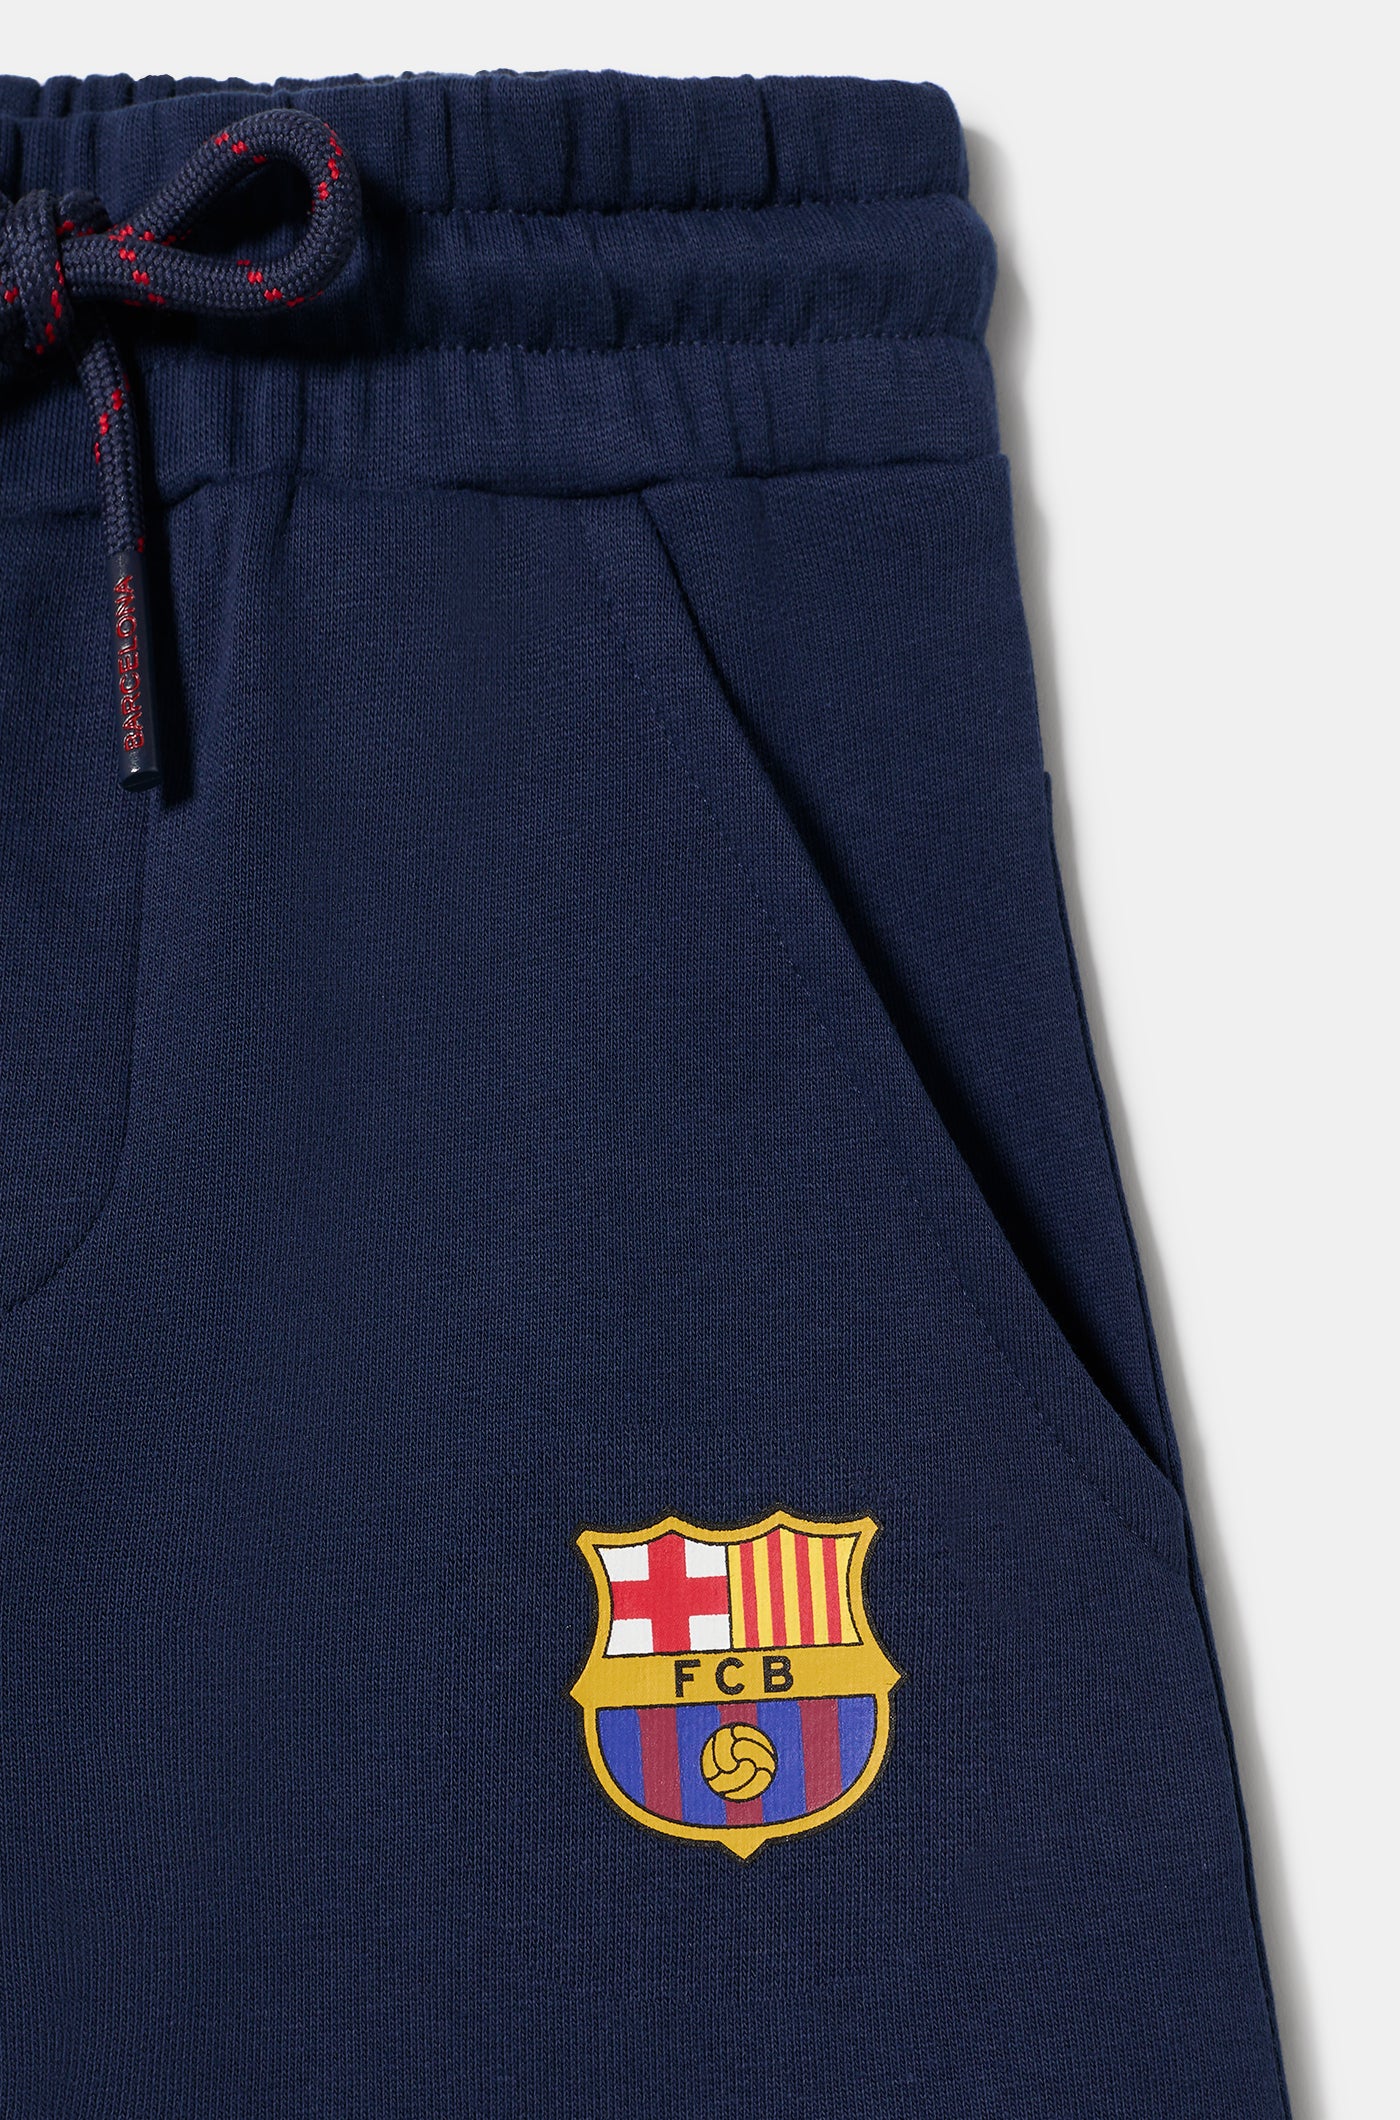 Pantalons Llargs de Xandall amb Escut del Barça - Junior